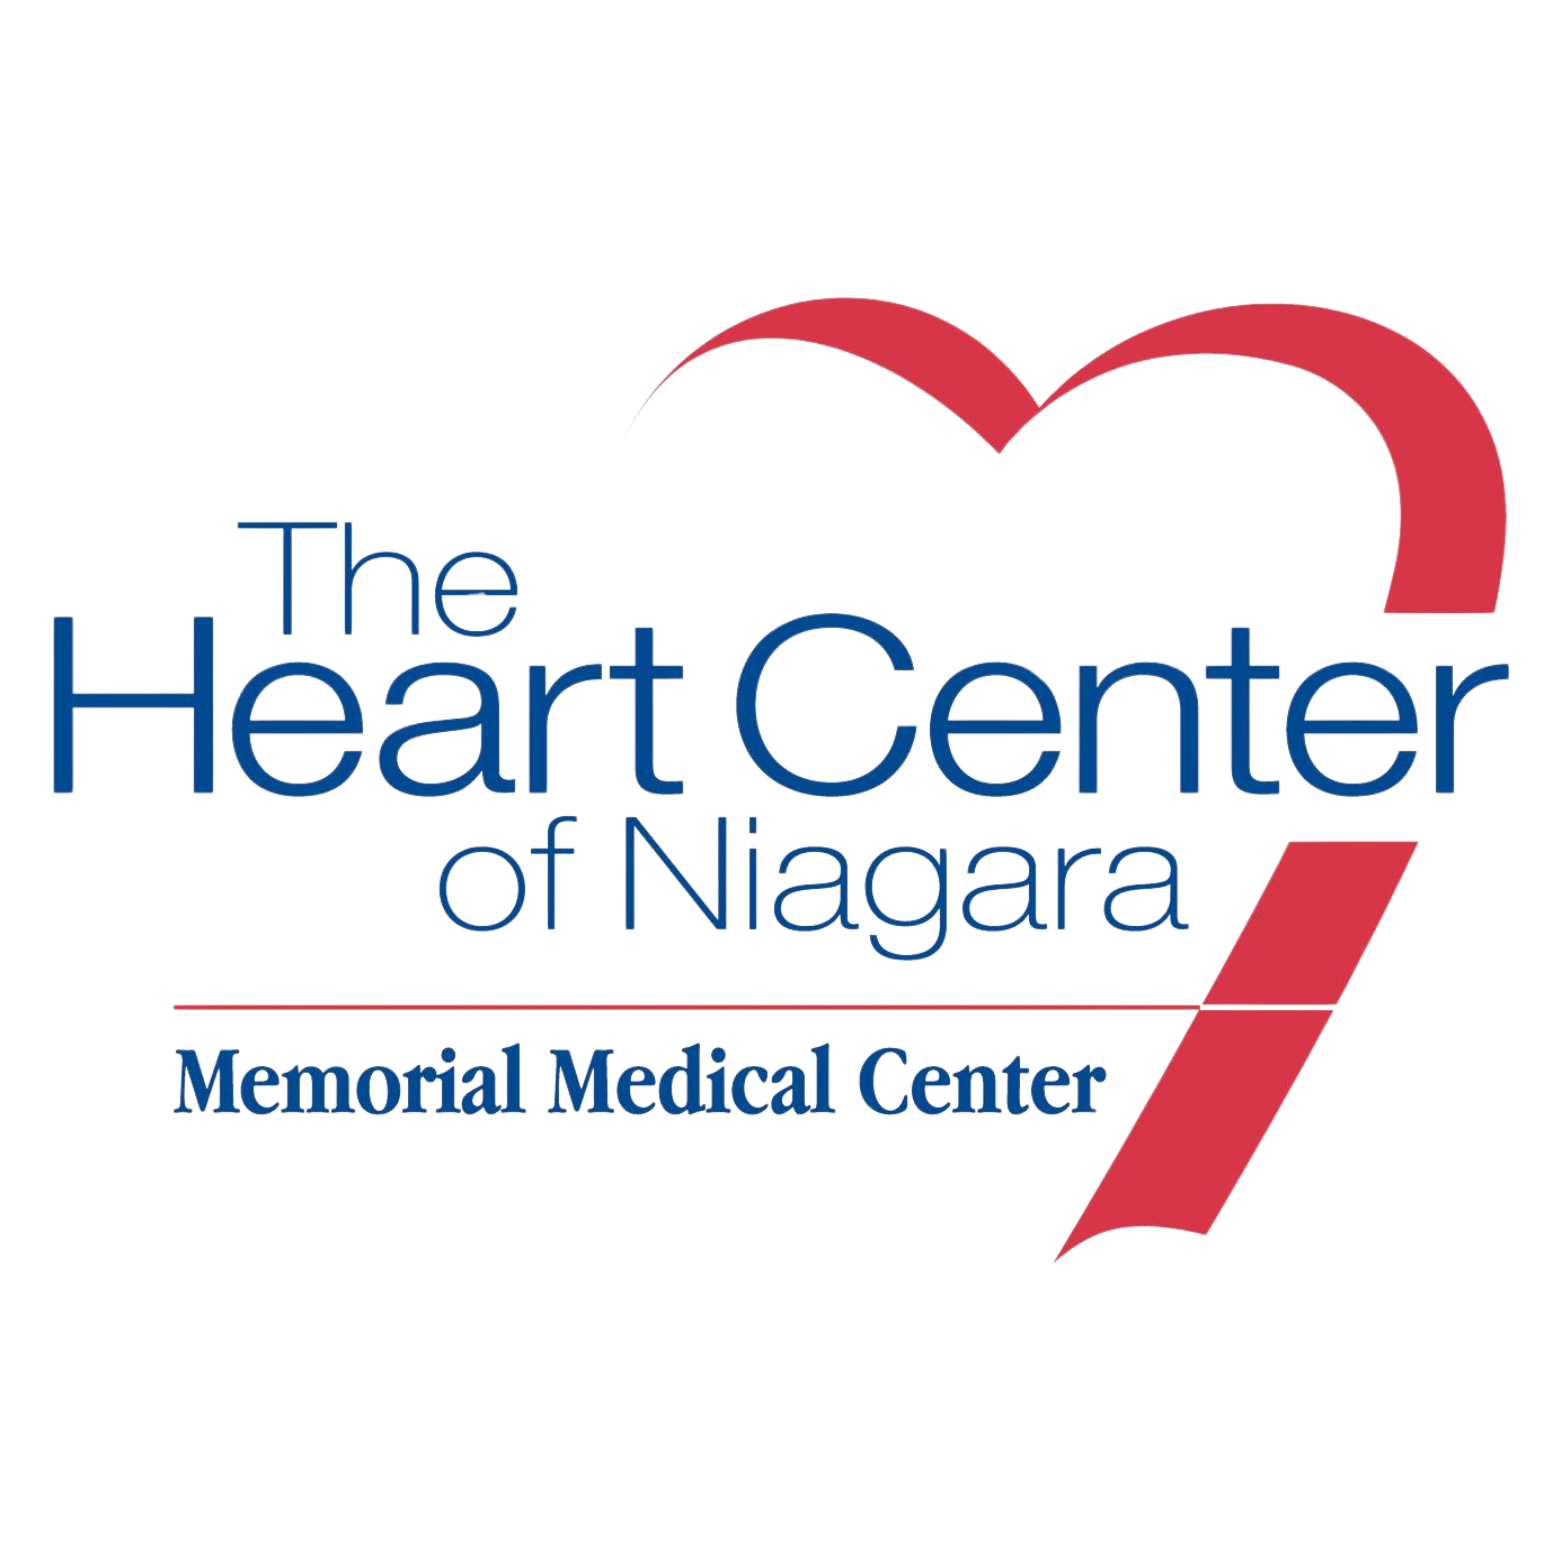 The Heart Center of Niagara - Memorial Medical Center logo